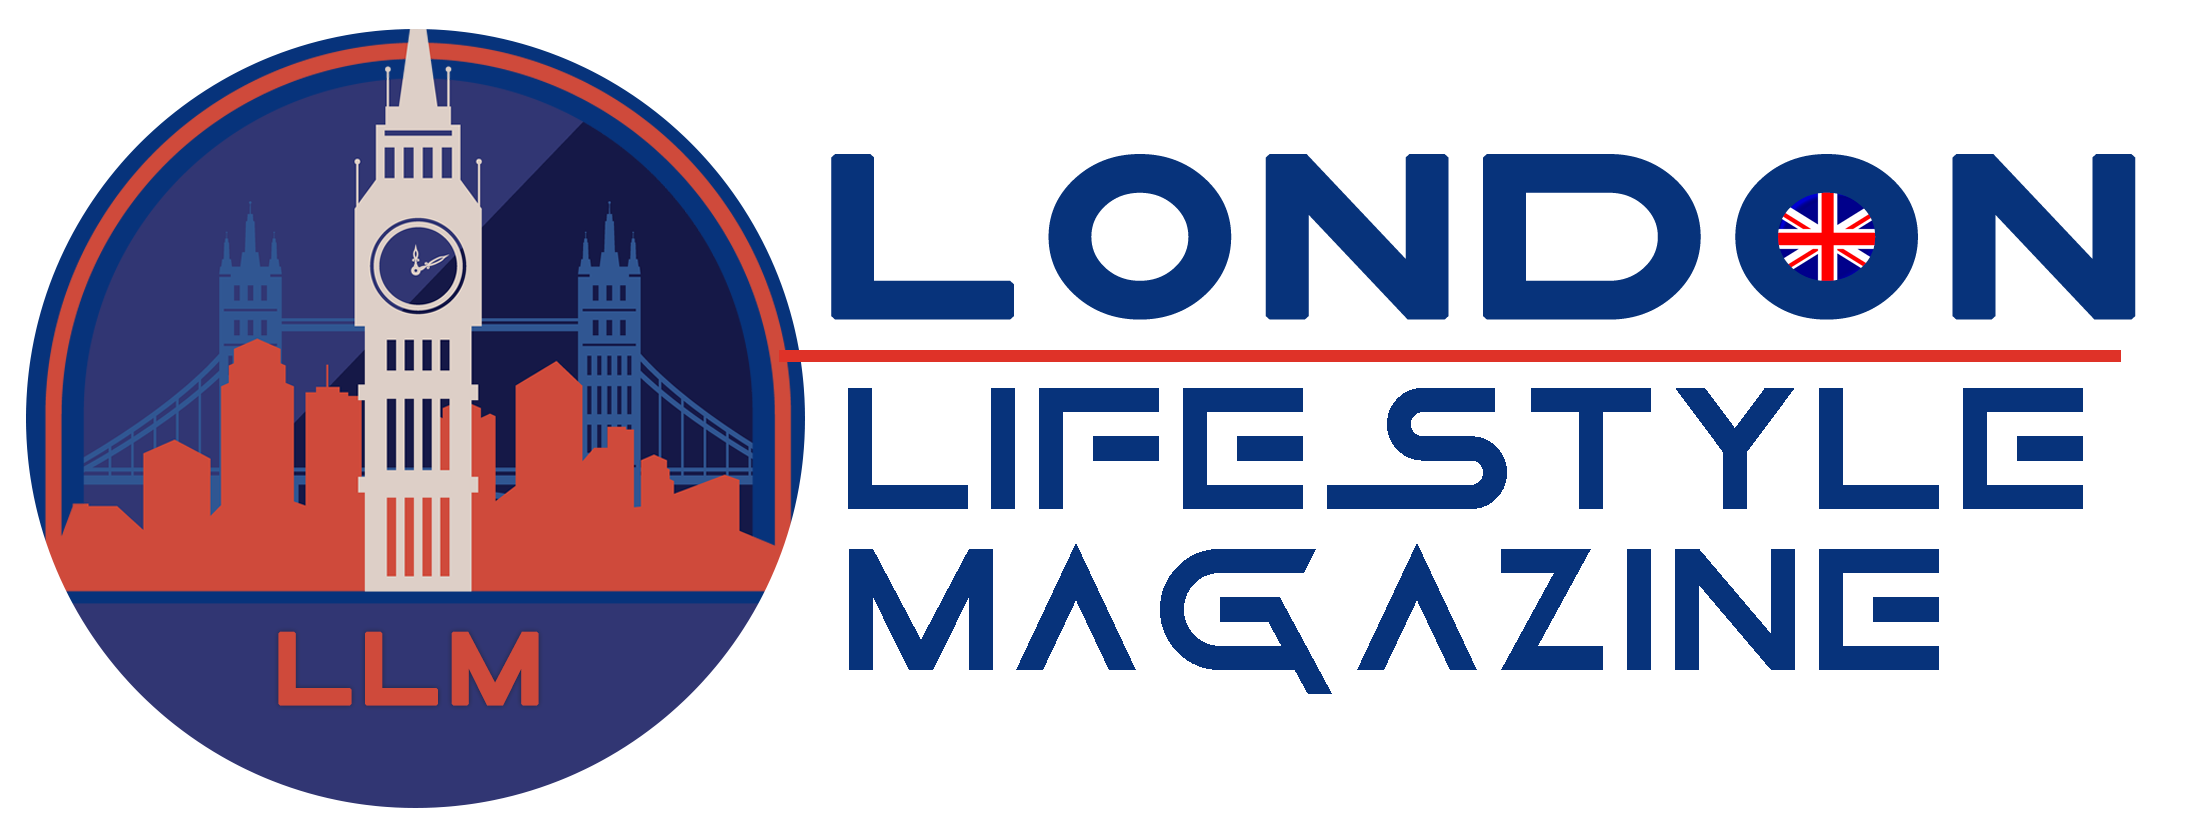 London Lifestyle Magazine